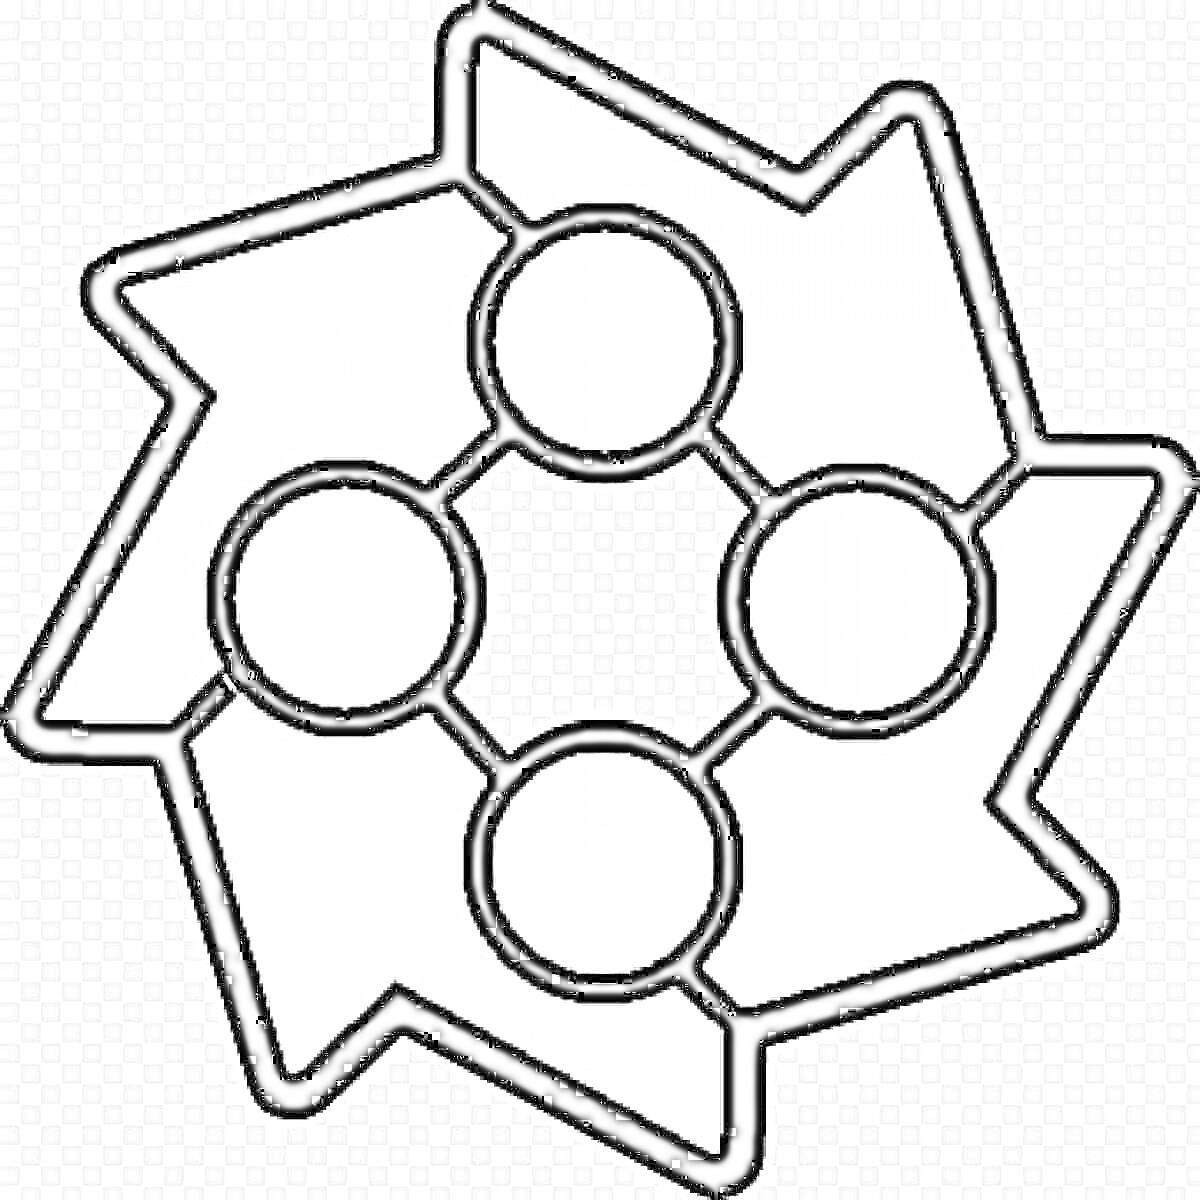 Фигура из игры Geometry Dash: звезда с четырьмя кругами